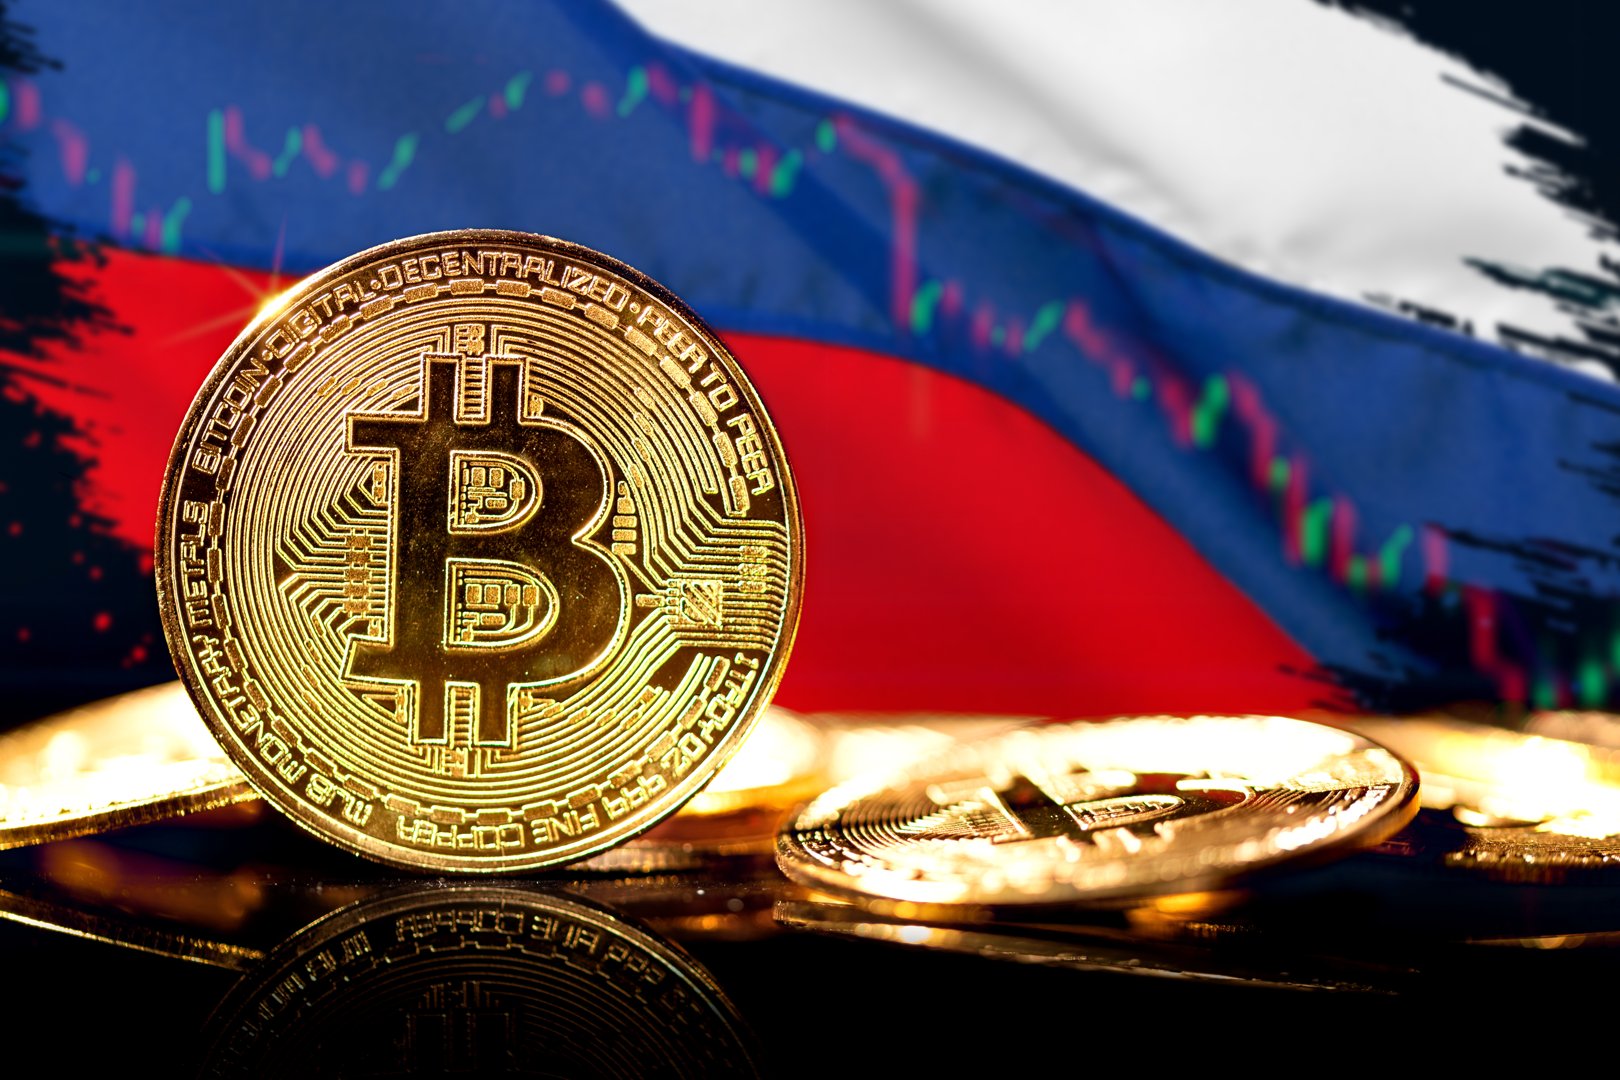 Representaciones artísticas de un token de Bitcoin, sobre un fondo de la bandera rusa y un gráfico de líneas.